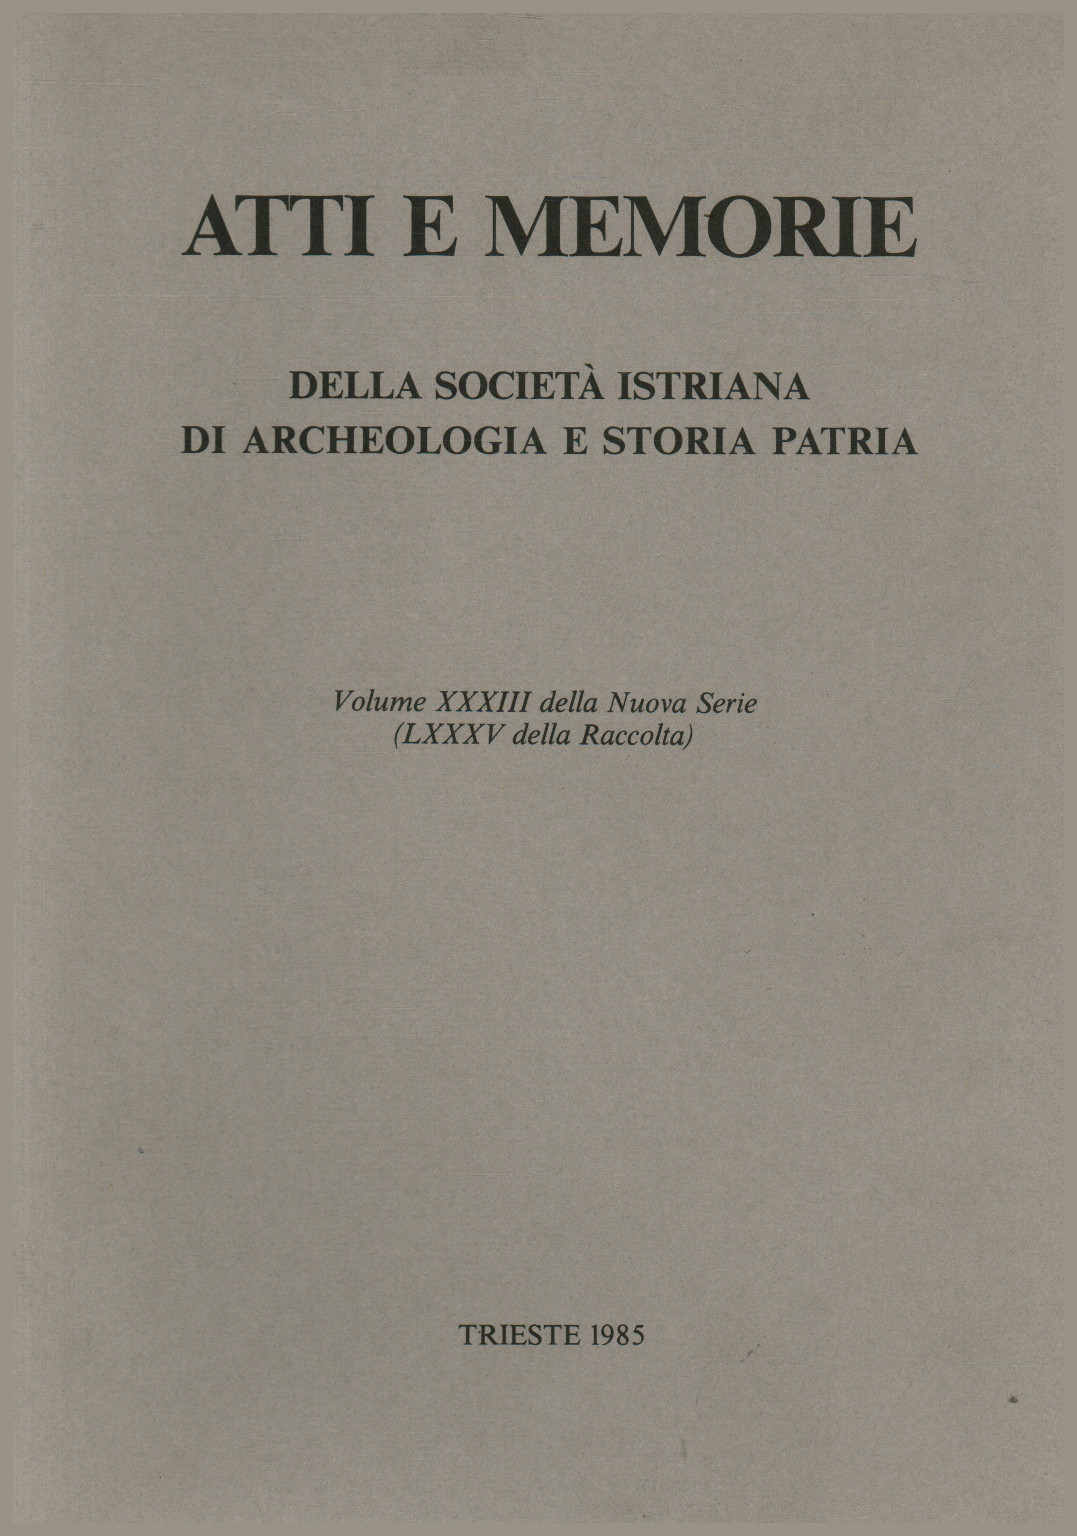 Atti e Memorie della società istriana di archeolo, s.a.